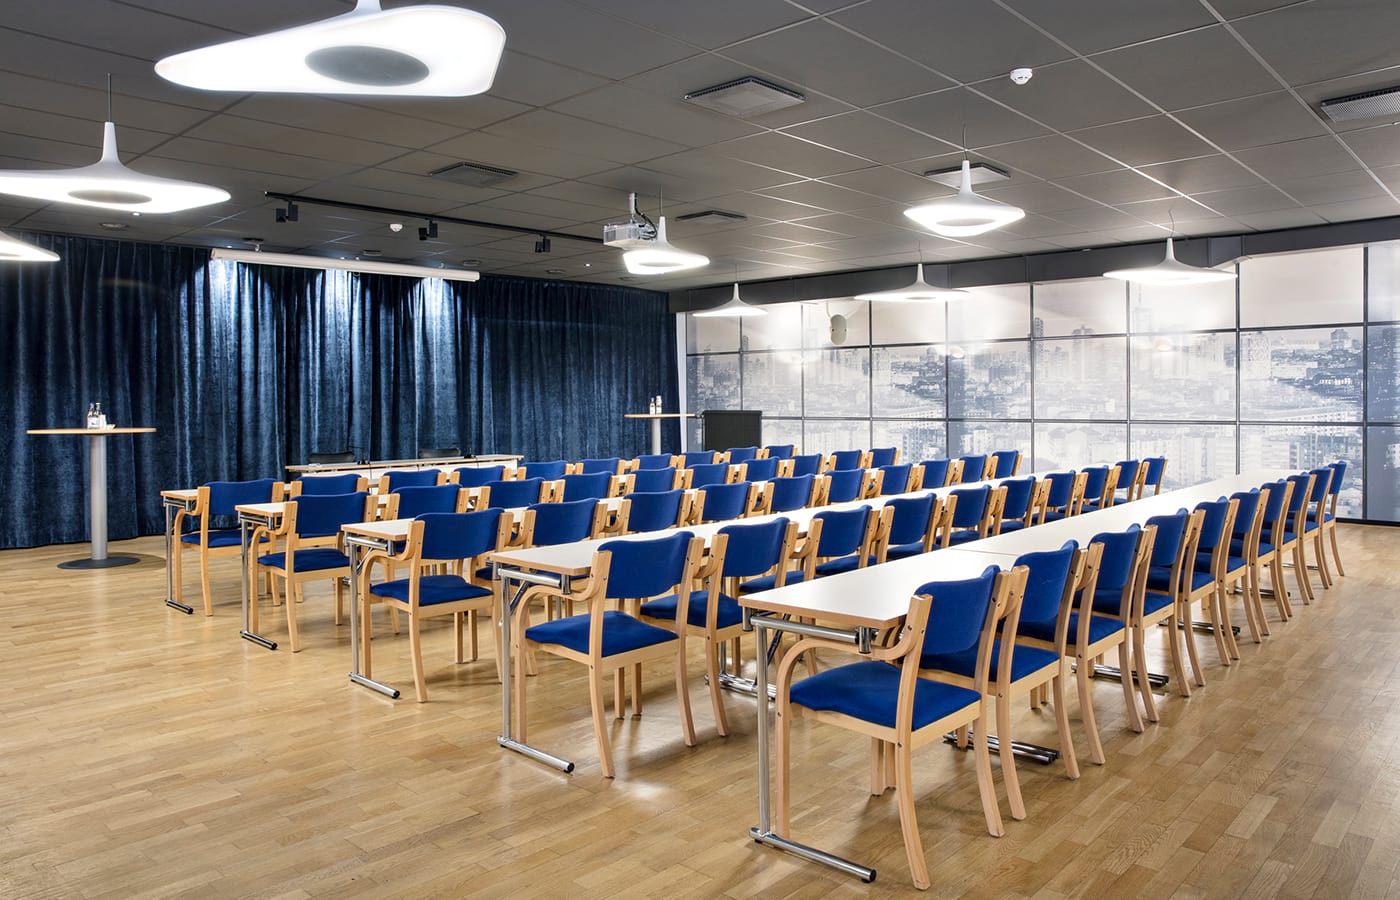 Konferensrum med vita långa bord, trästolar med blå dynor, blå gardiner, vita lampor i taket